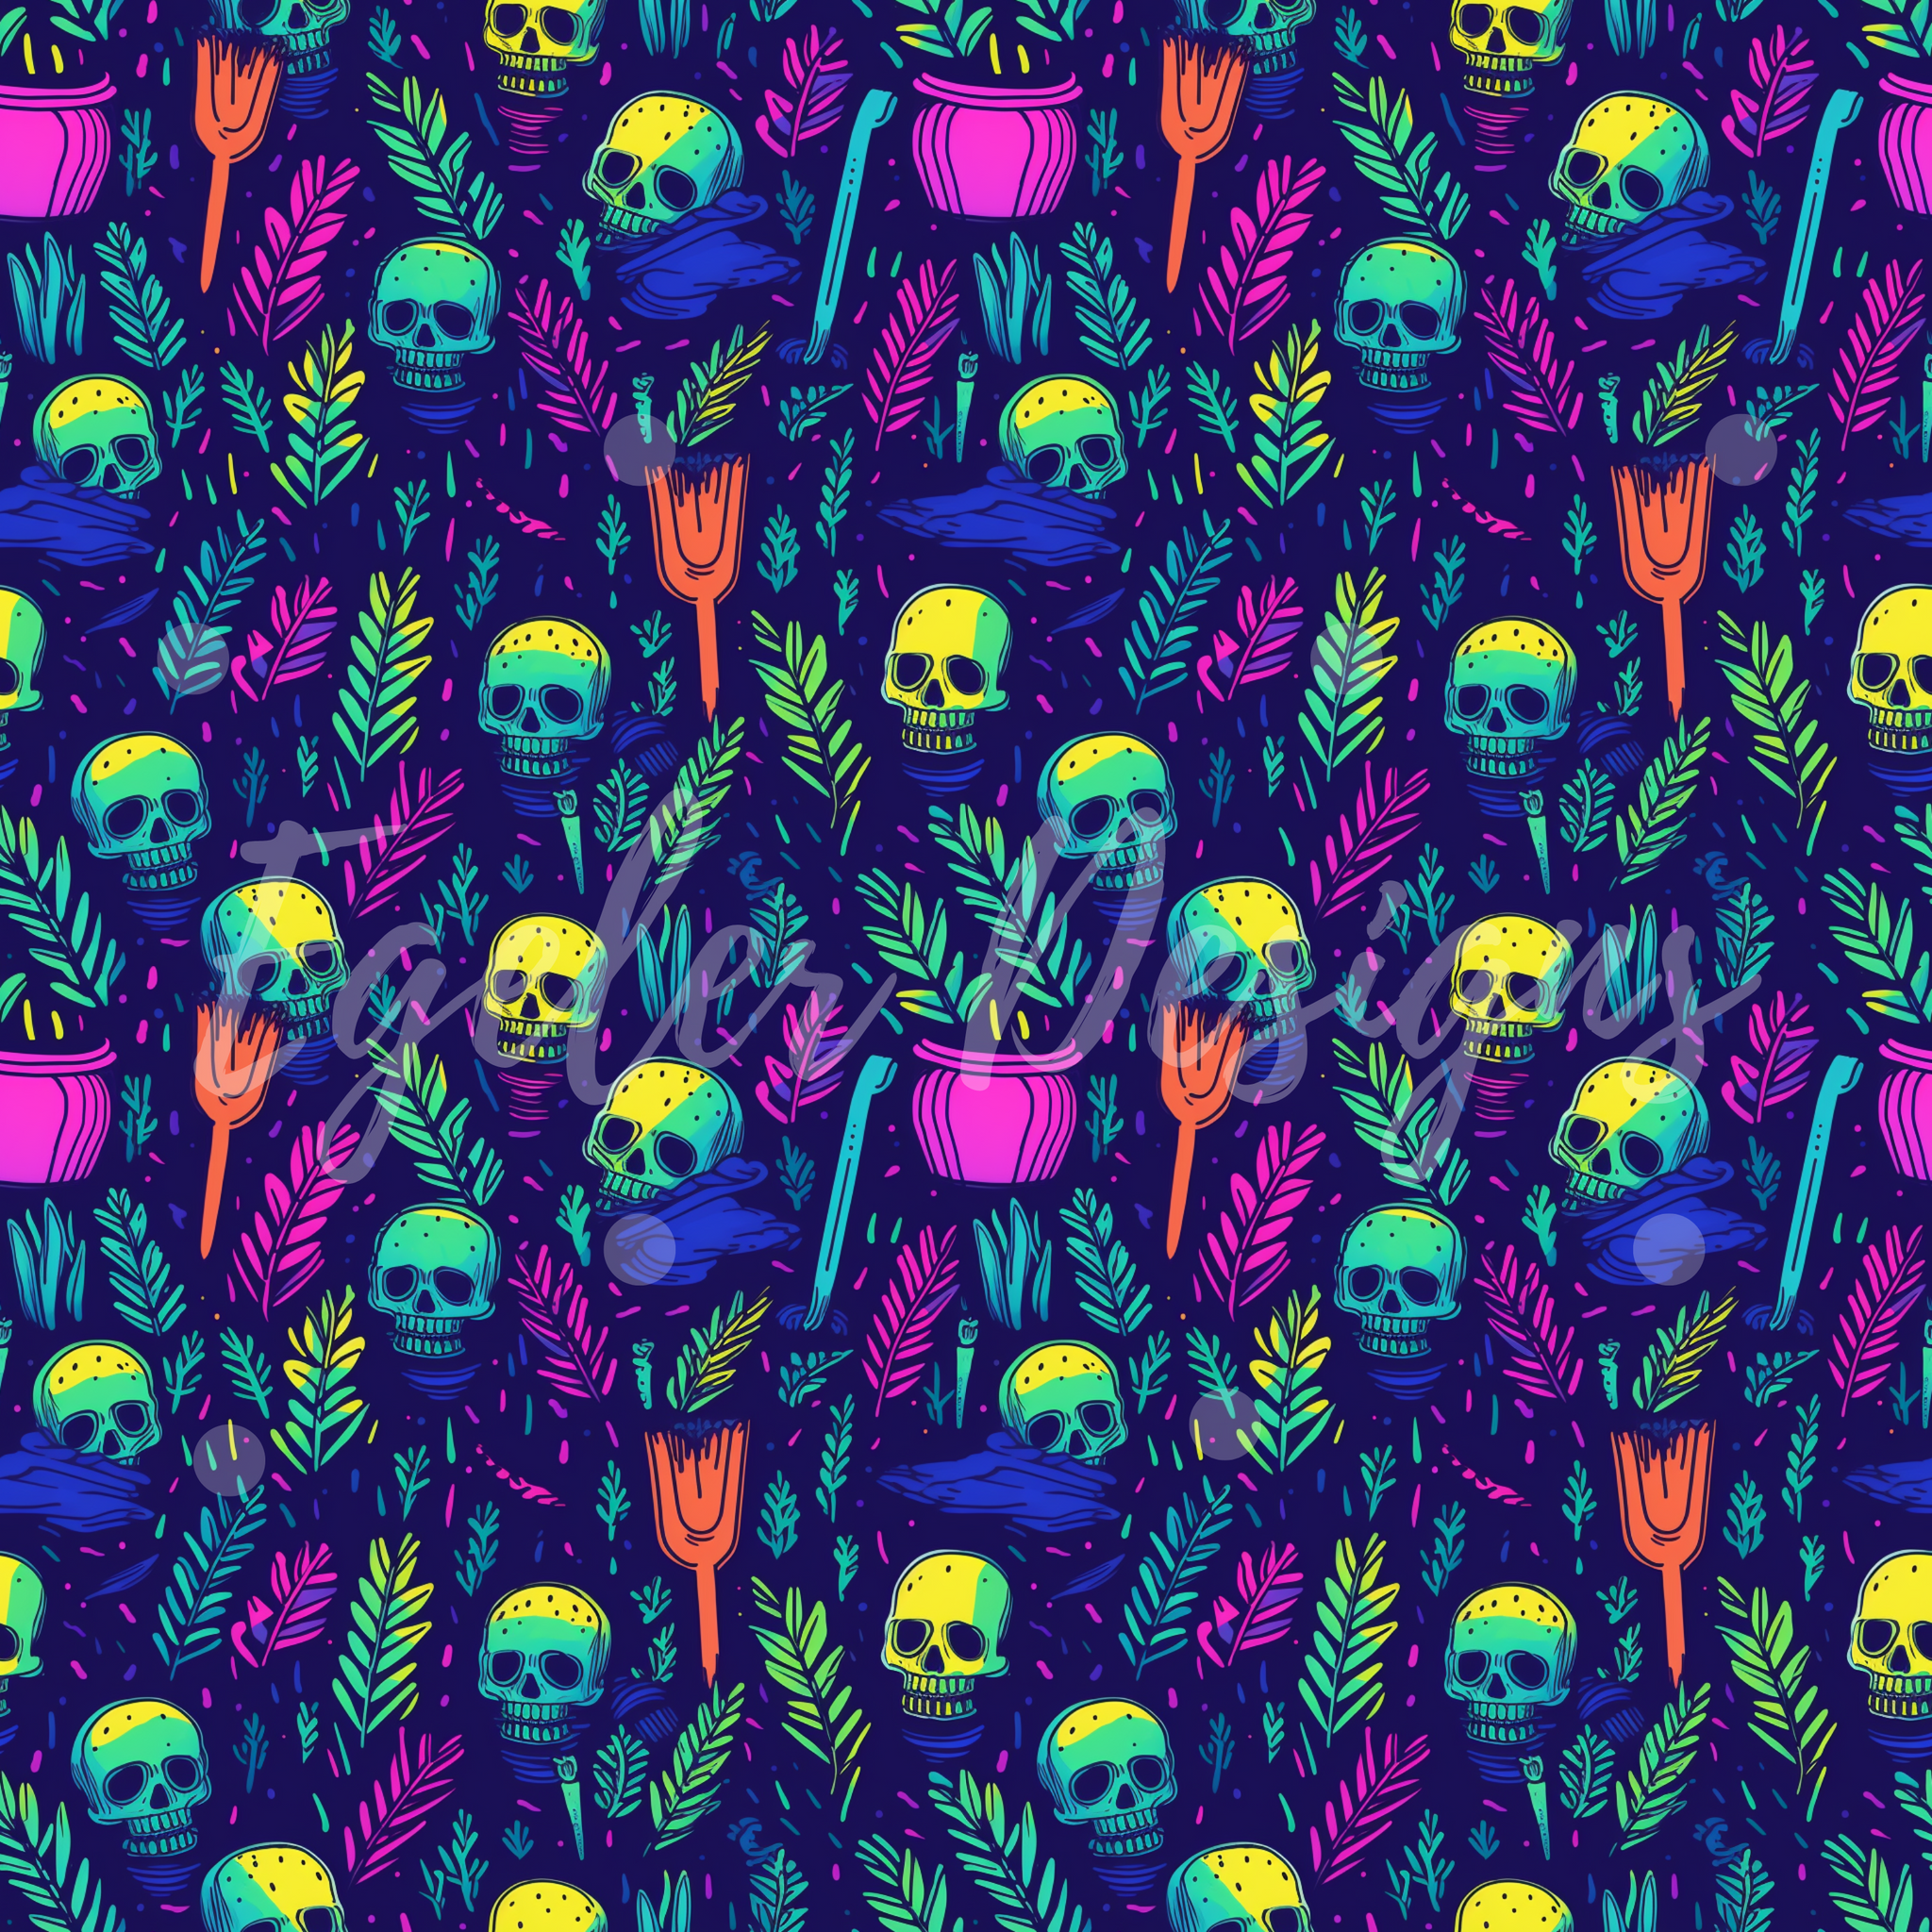 Neon Floral Skulls (EXCLUSIVE 25)